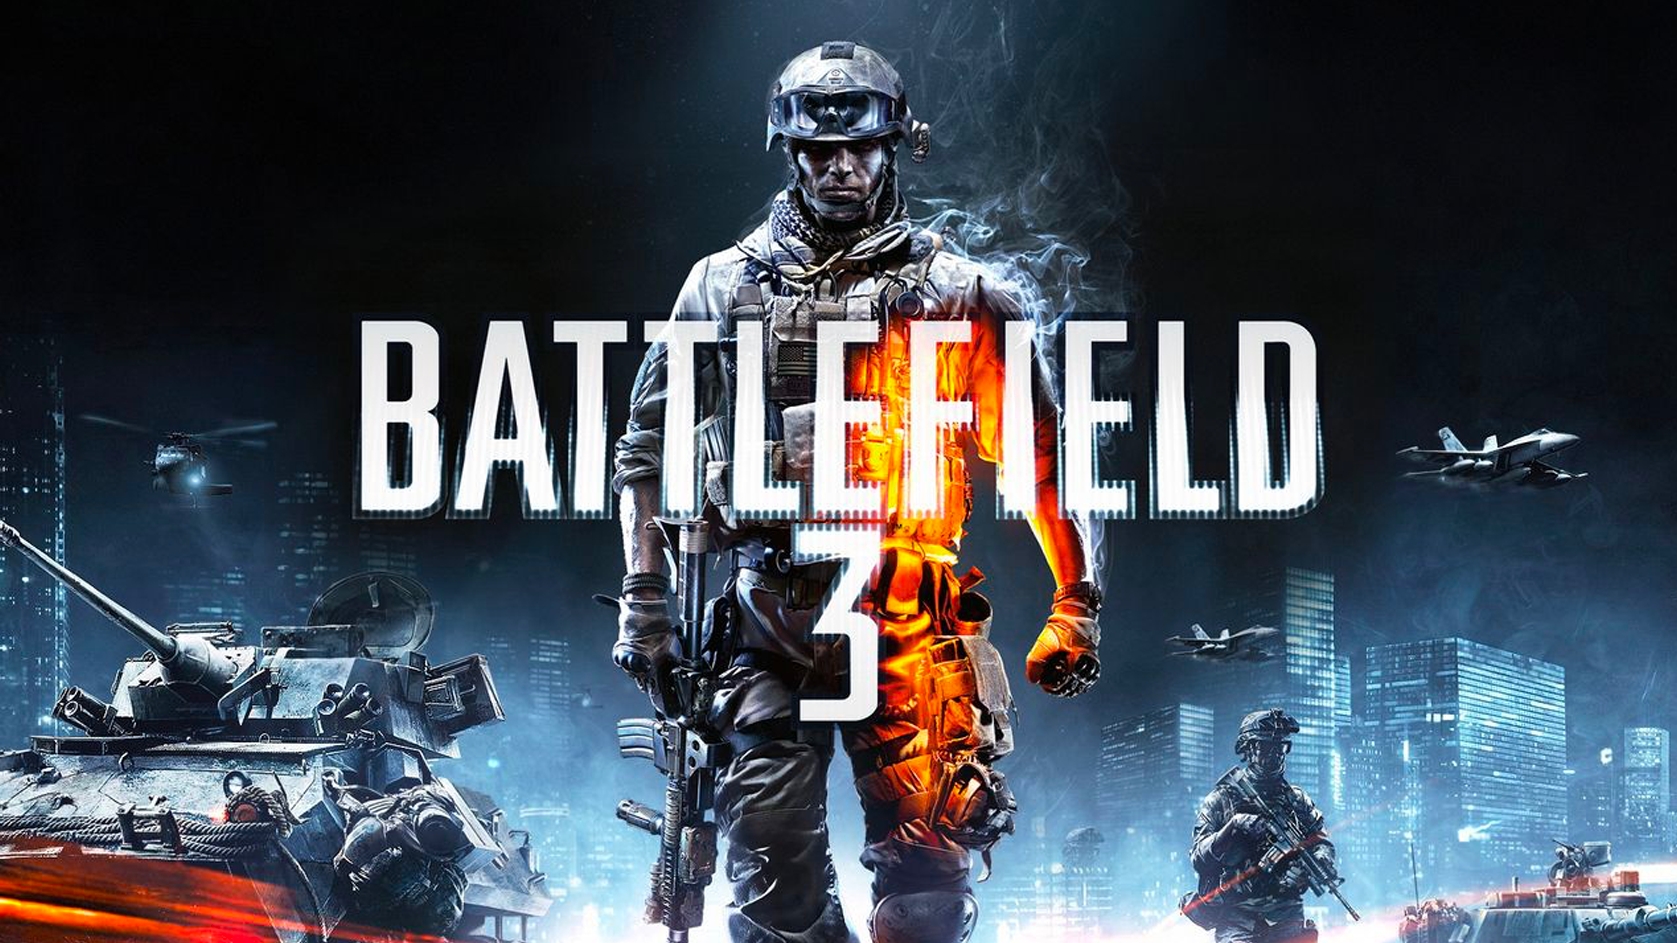 Battlefield 4: los requerimientos mínimos son idénticos a los de BF 3